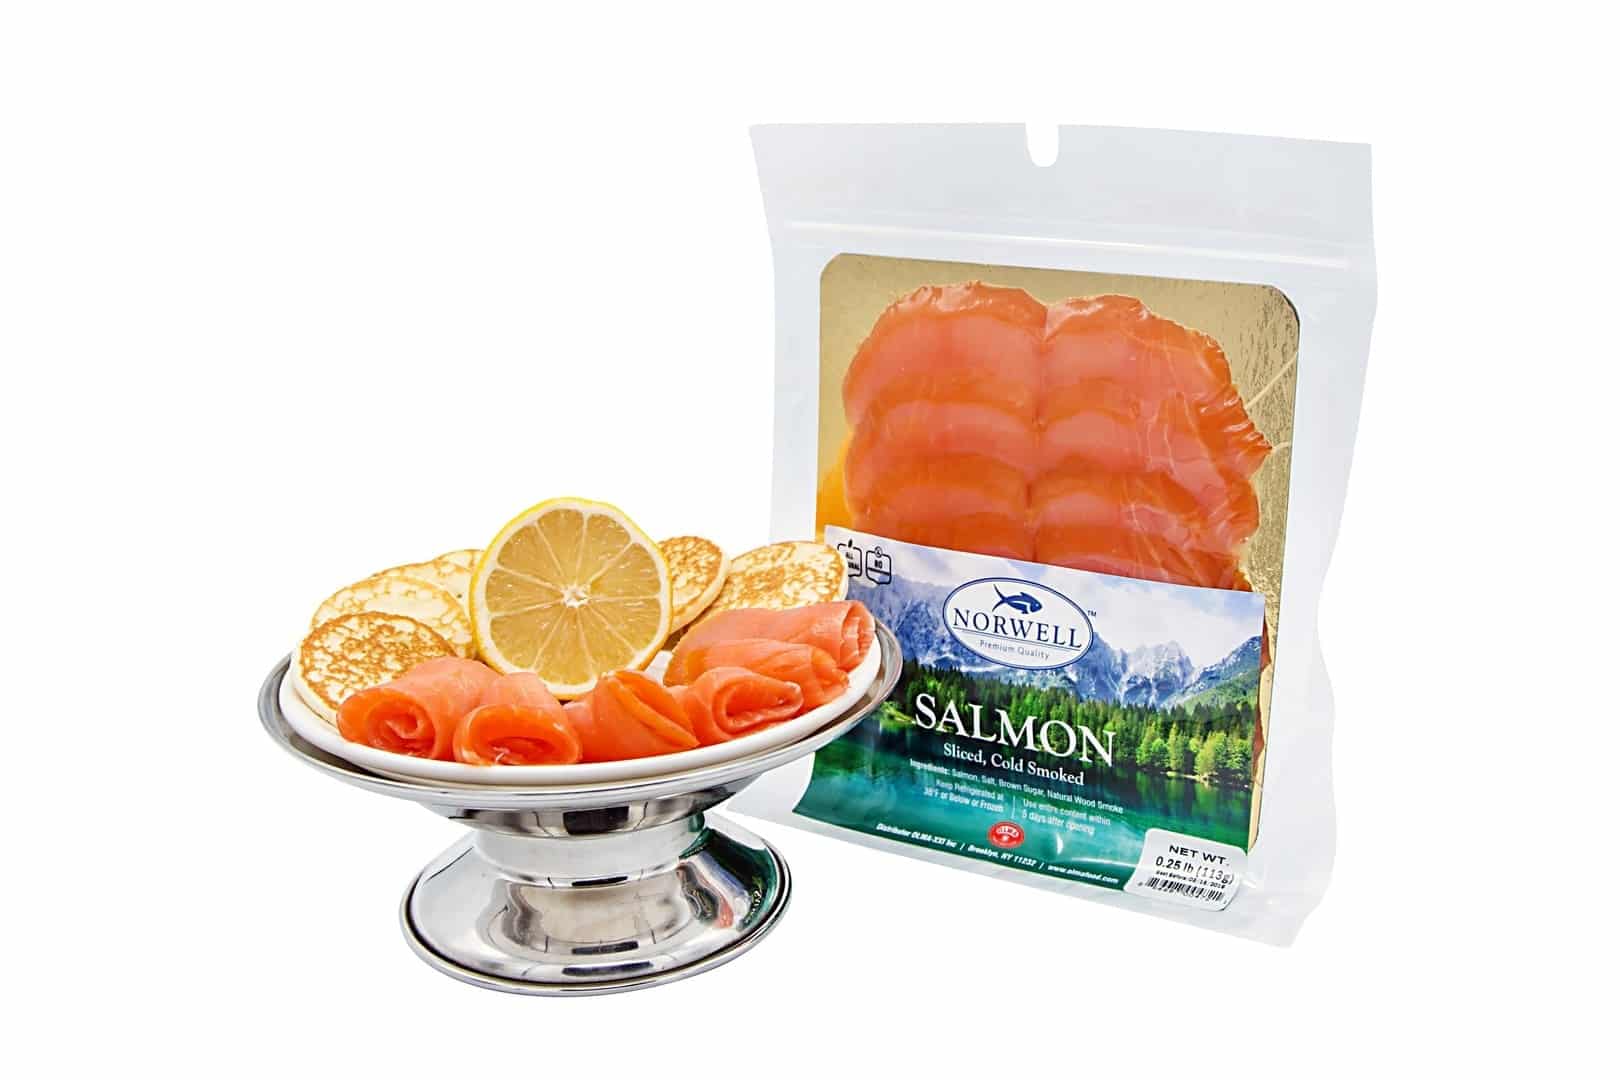 Premium Norwegian Smoked Salmon 4 oz (113g)